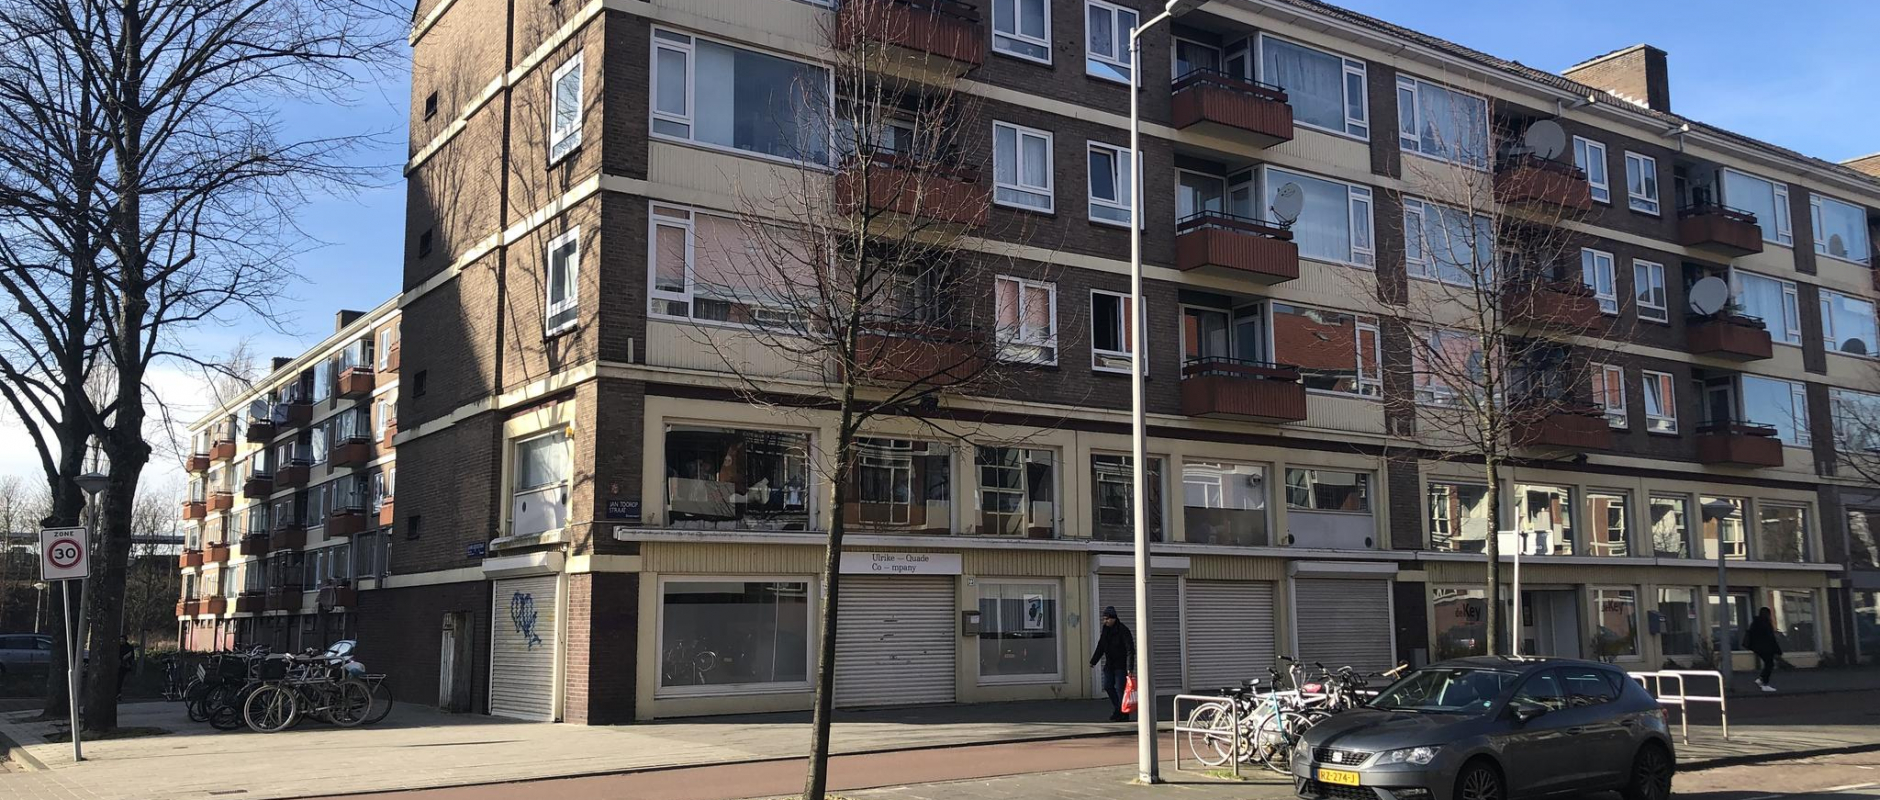 Woning te koop aan de Jan Tooropstraat 73 te Amsterdam